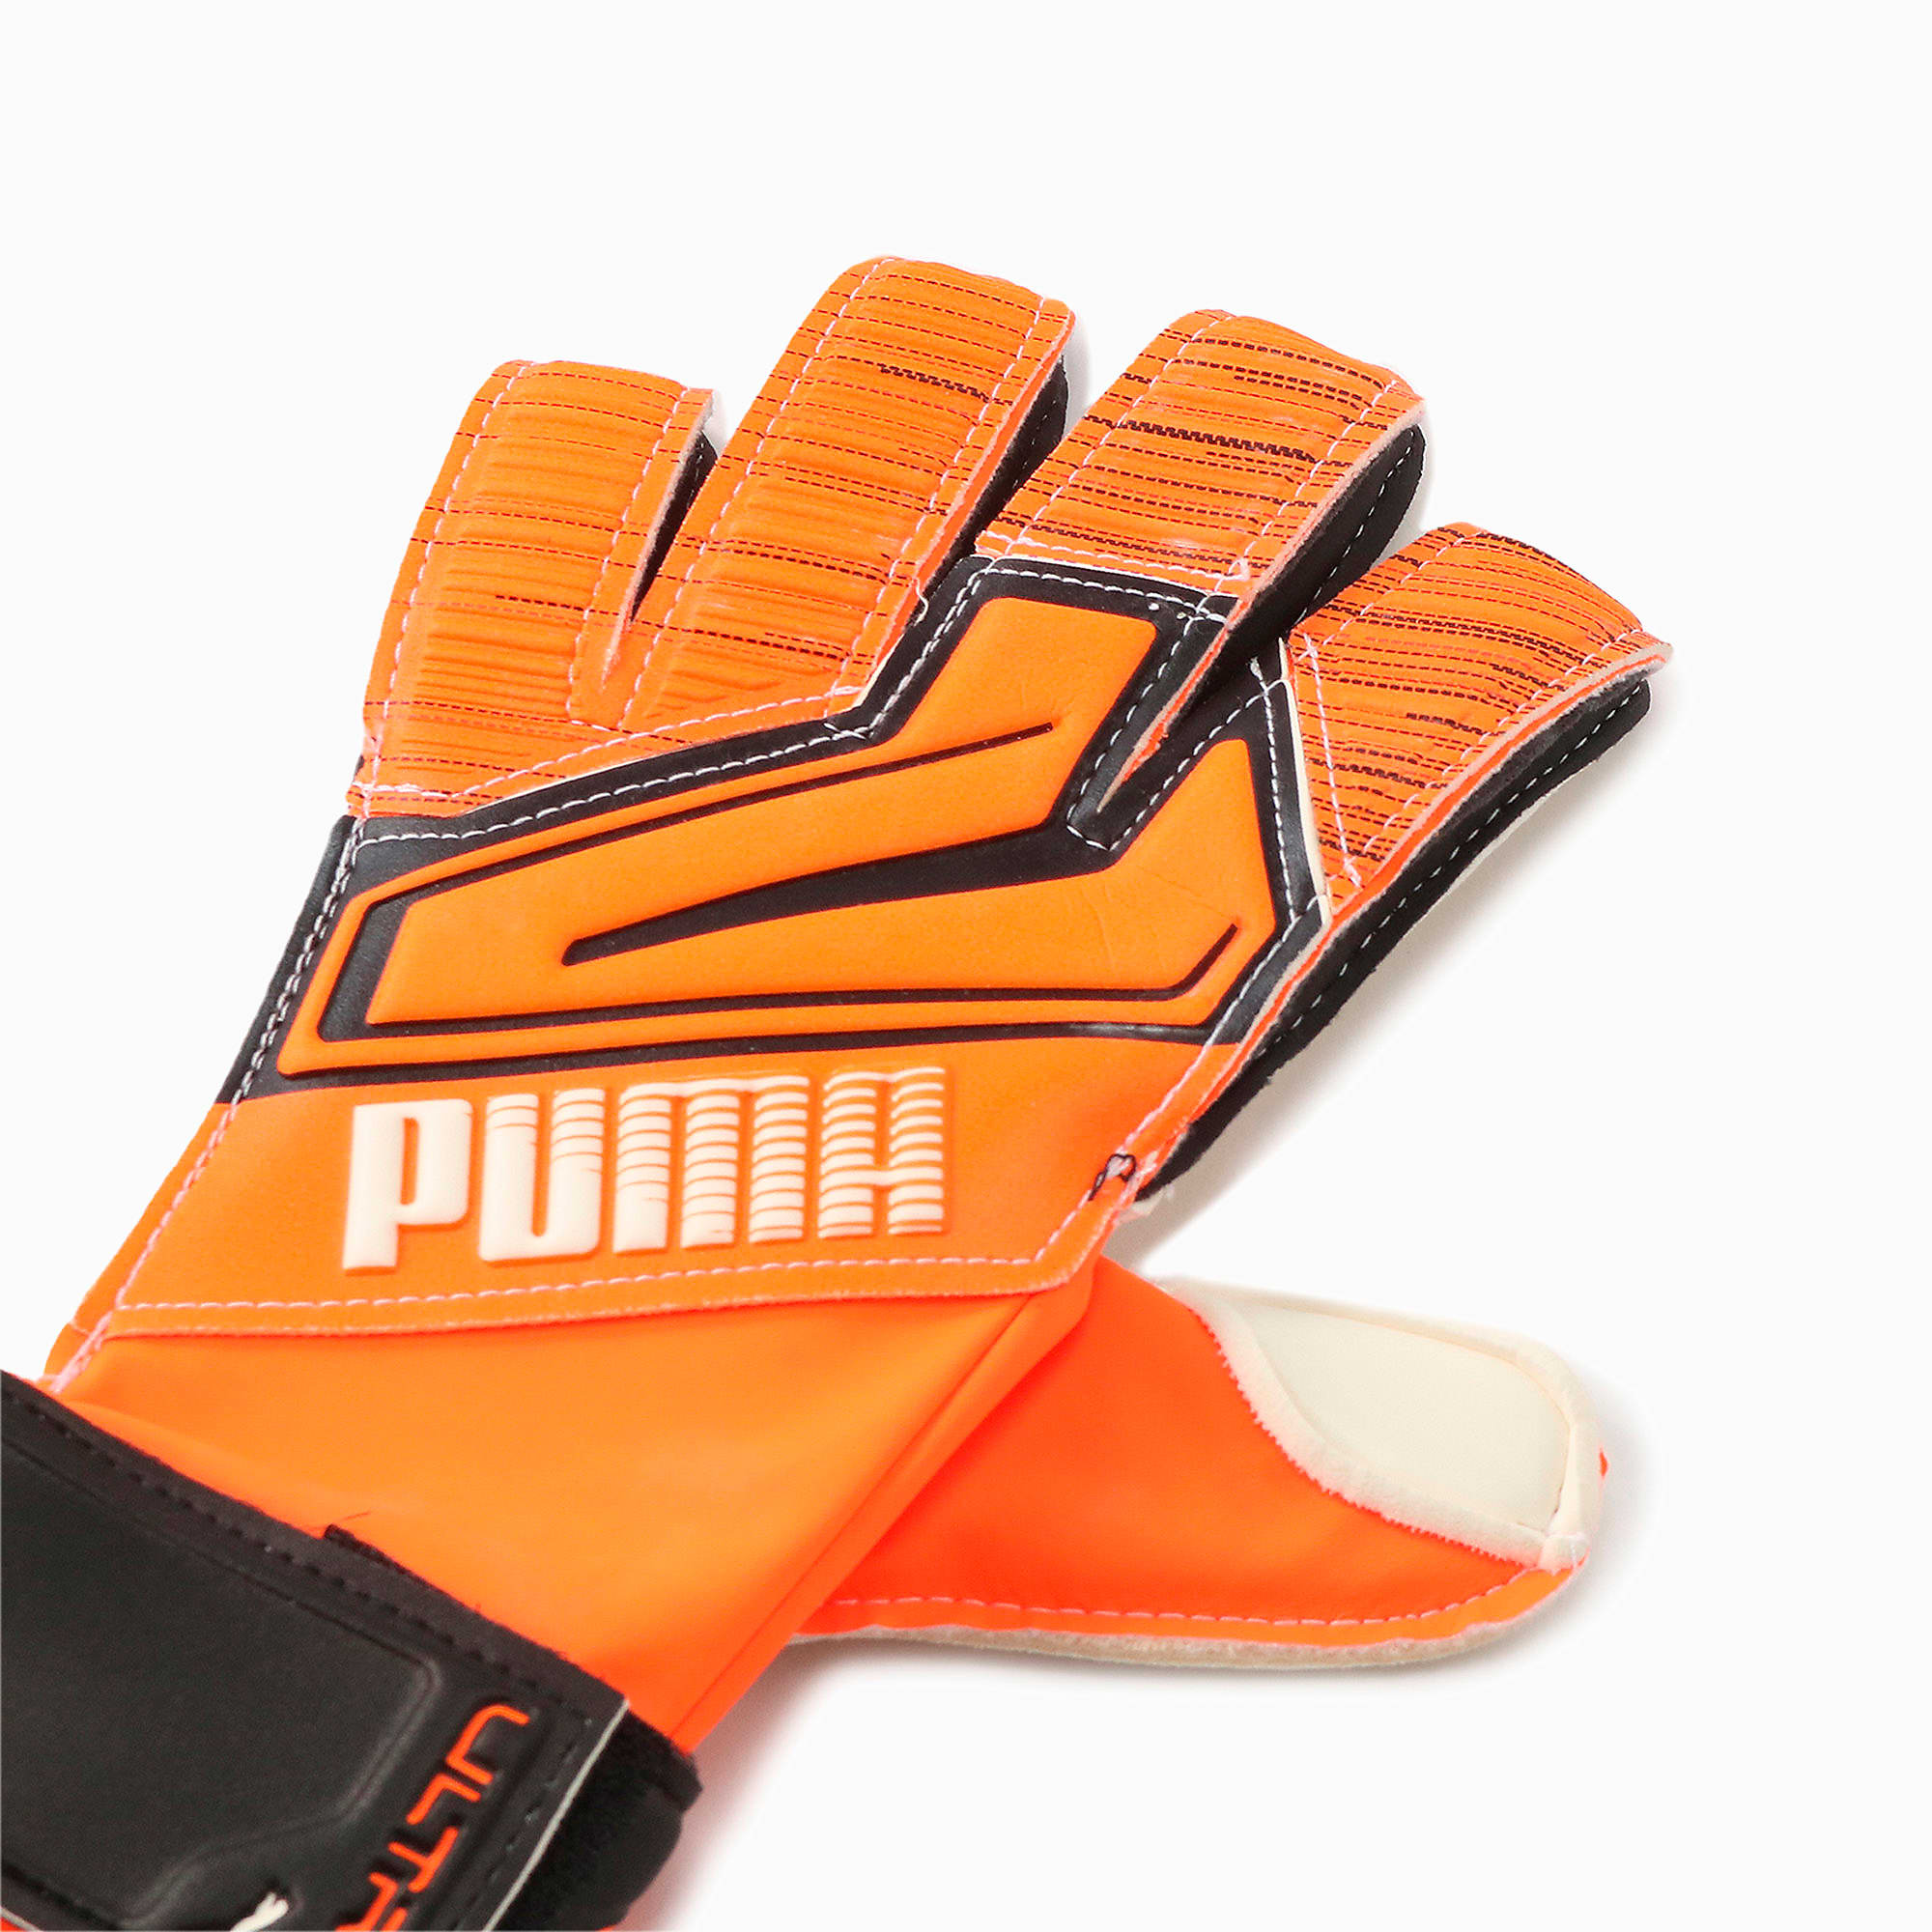 Puma公式 ウルトラ グリップ 3 Rc サッカー ゴールキーパー グローブ メンズ Shocking Orange White Black プーマ サッカー プーマ